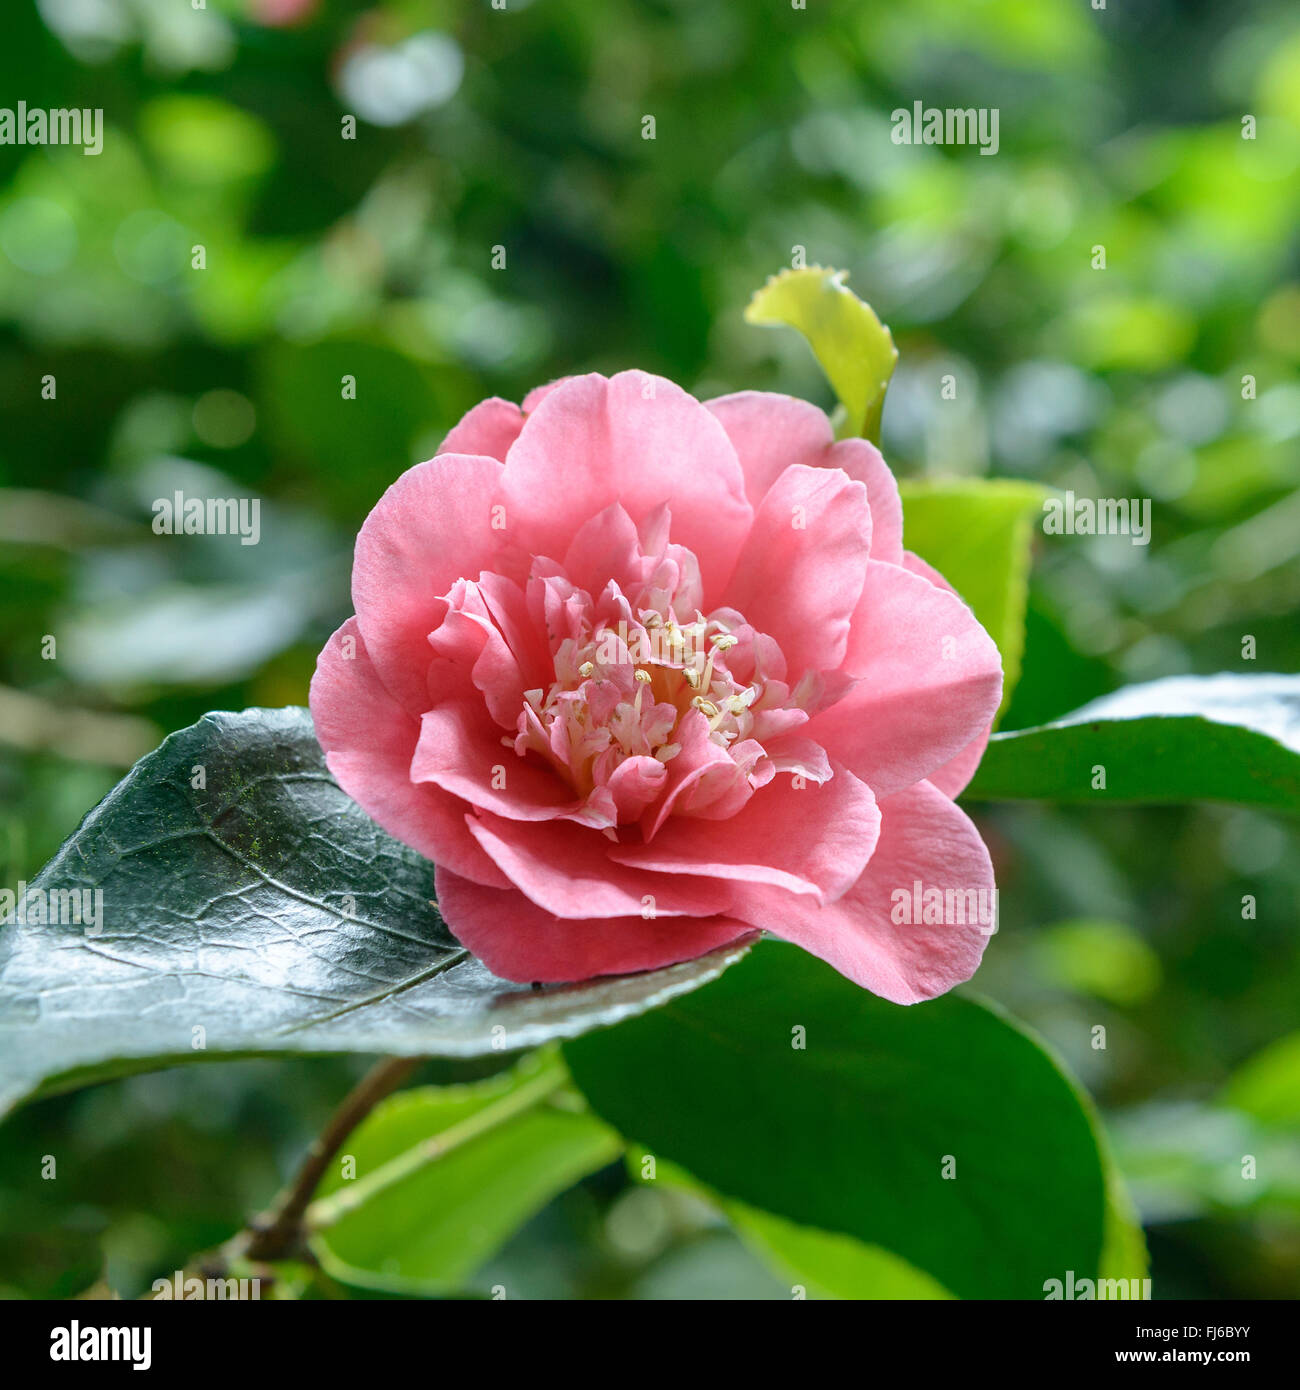 Japanese camellia (Camellia japonica 'RL Wheeler', Camellia japonica RL Wheeler), flower of cultivar RL Wheeler, United Kingdom, England Stock Photo